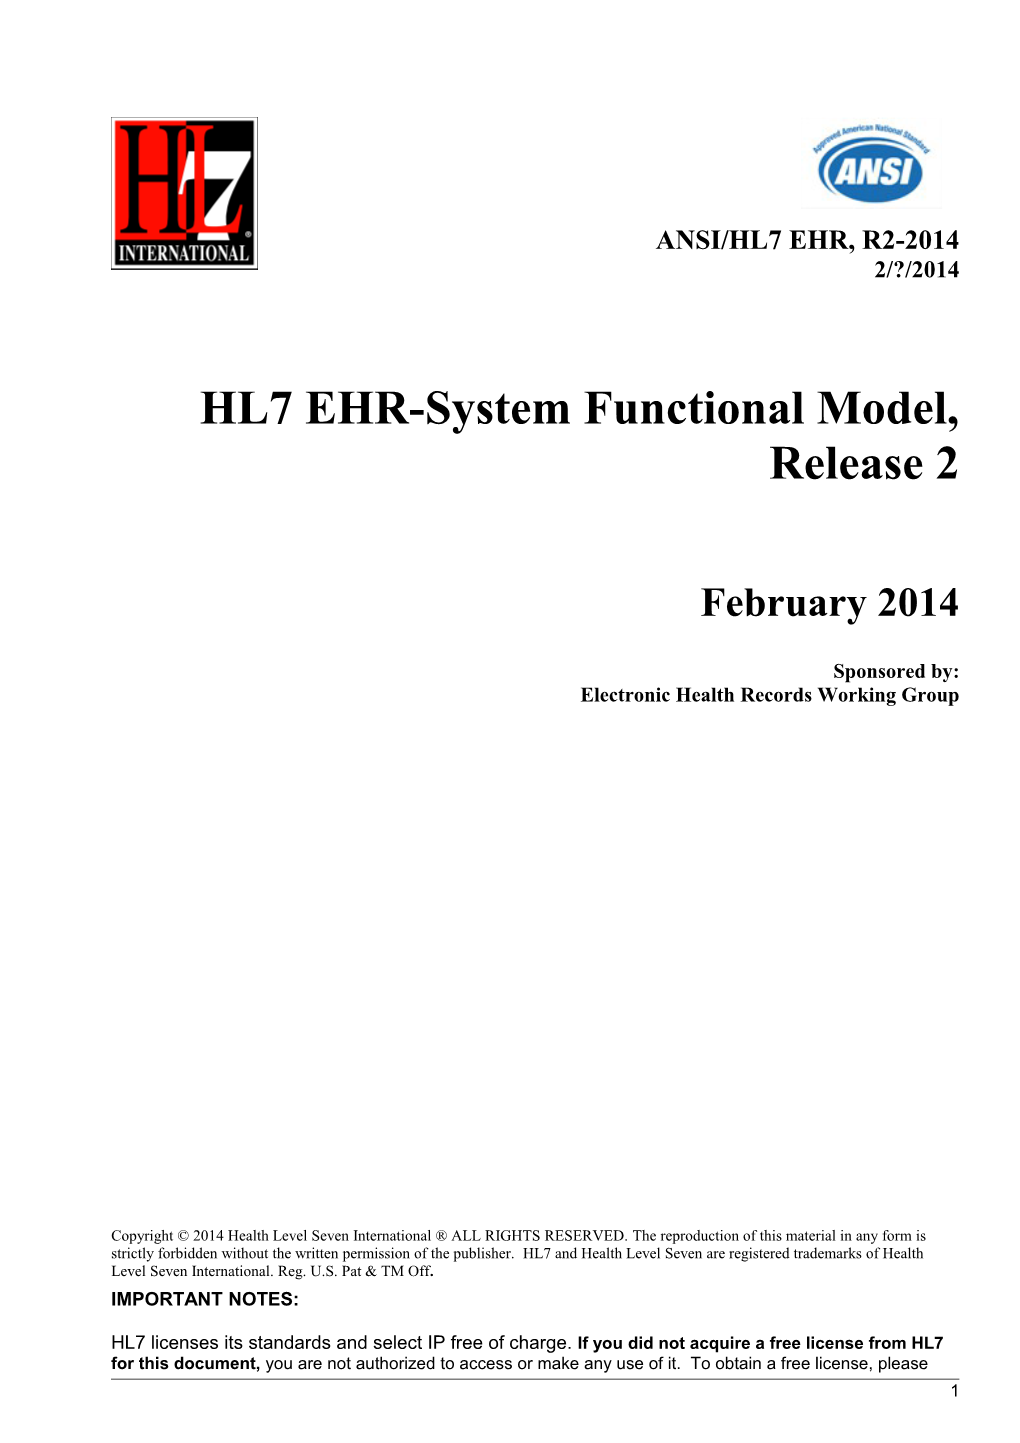 HL7 EHR-System Functional Model, Release 2